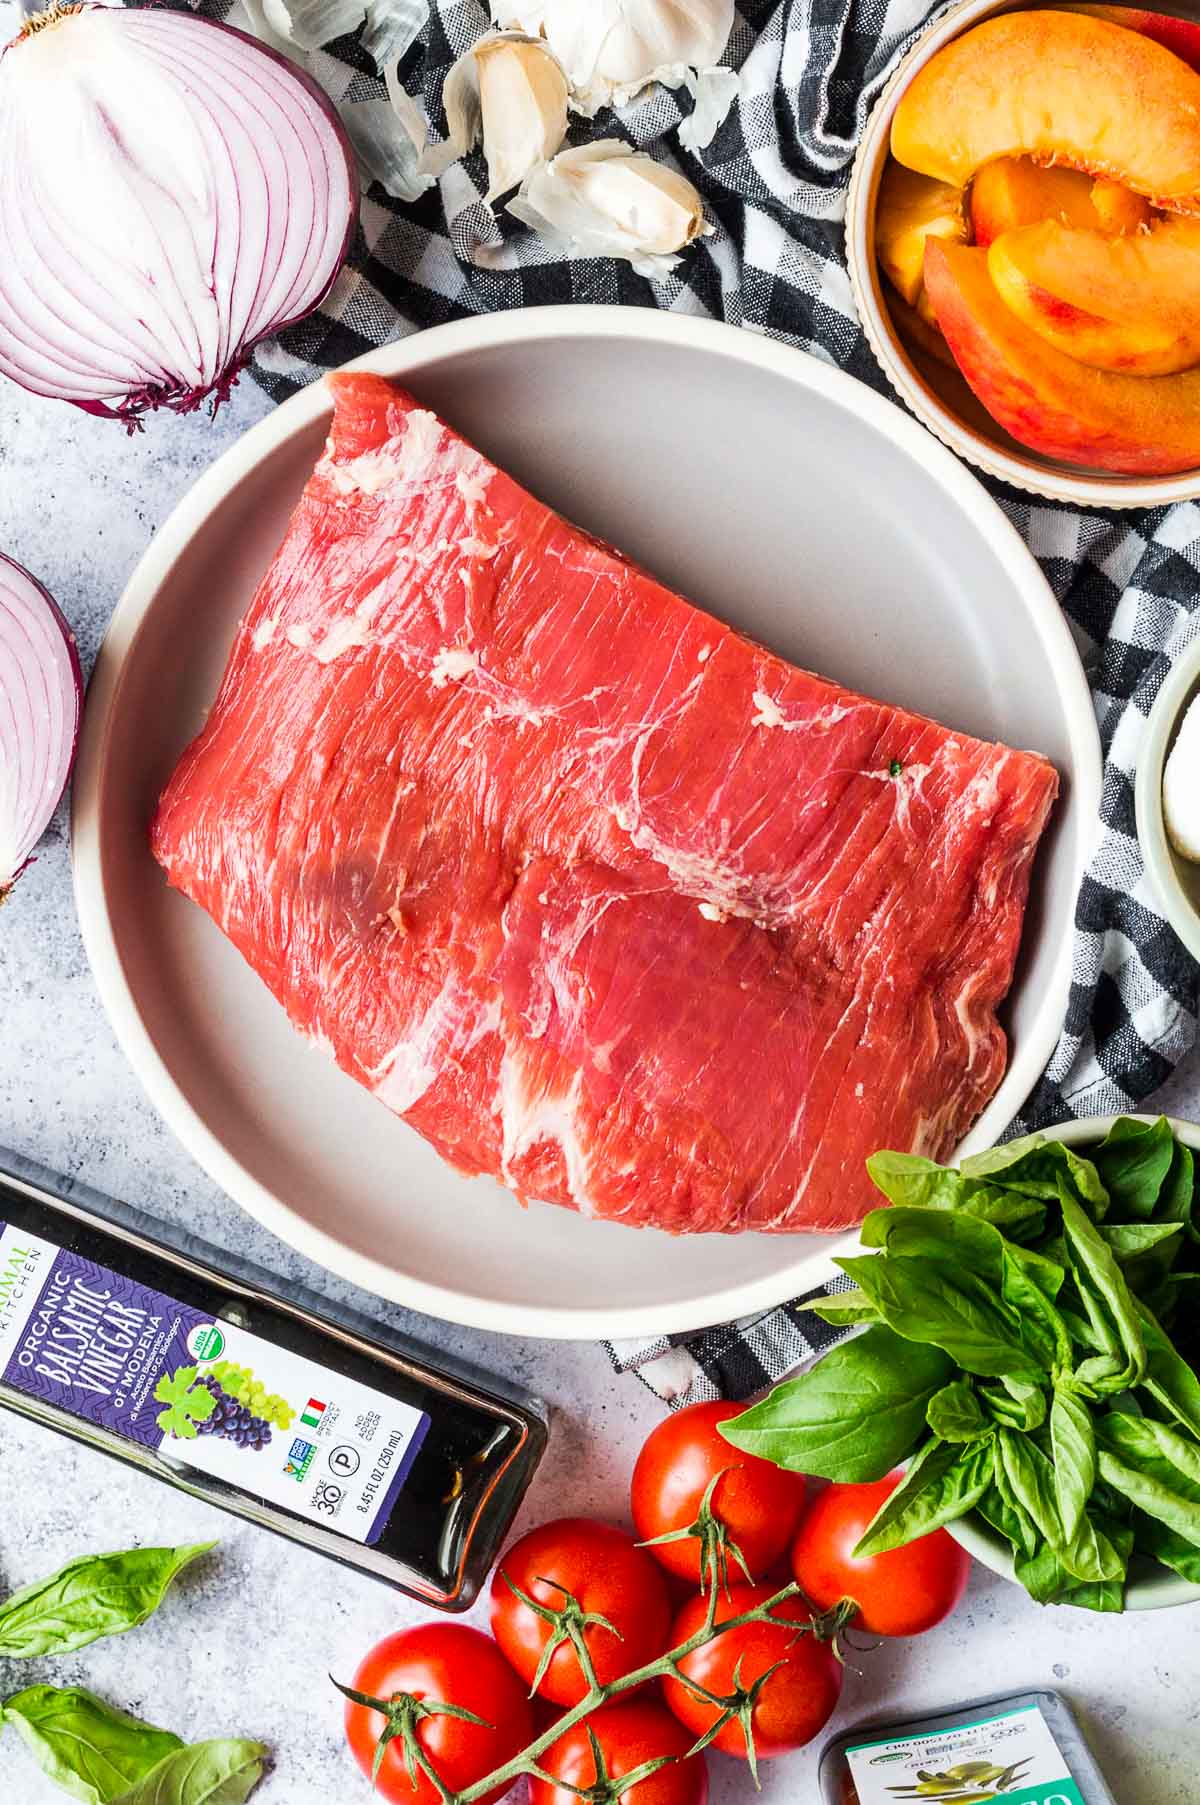 steak salad ingredients